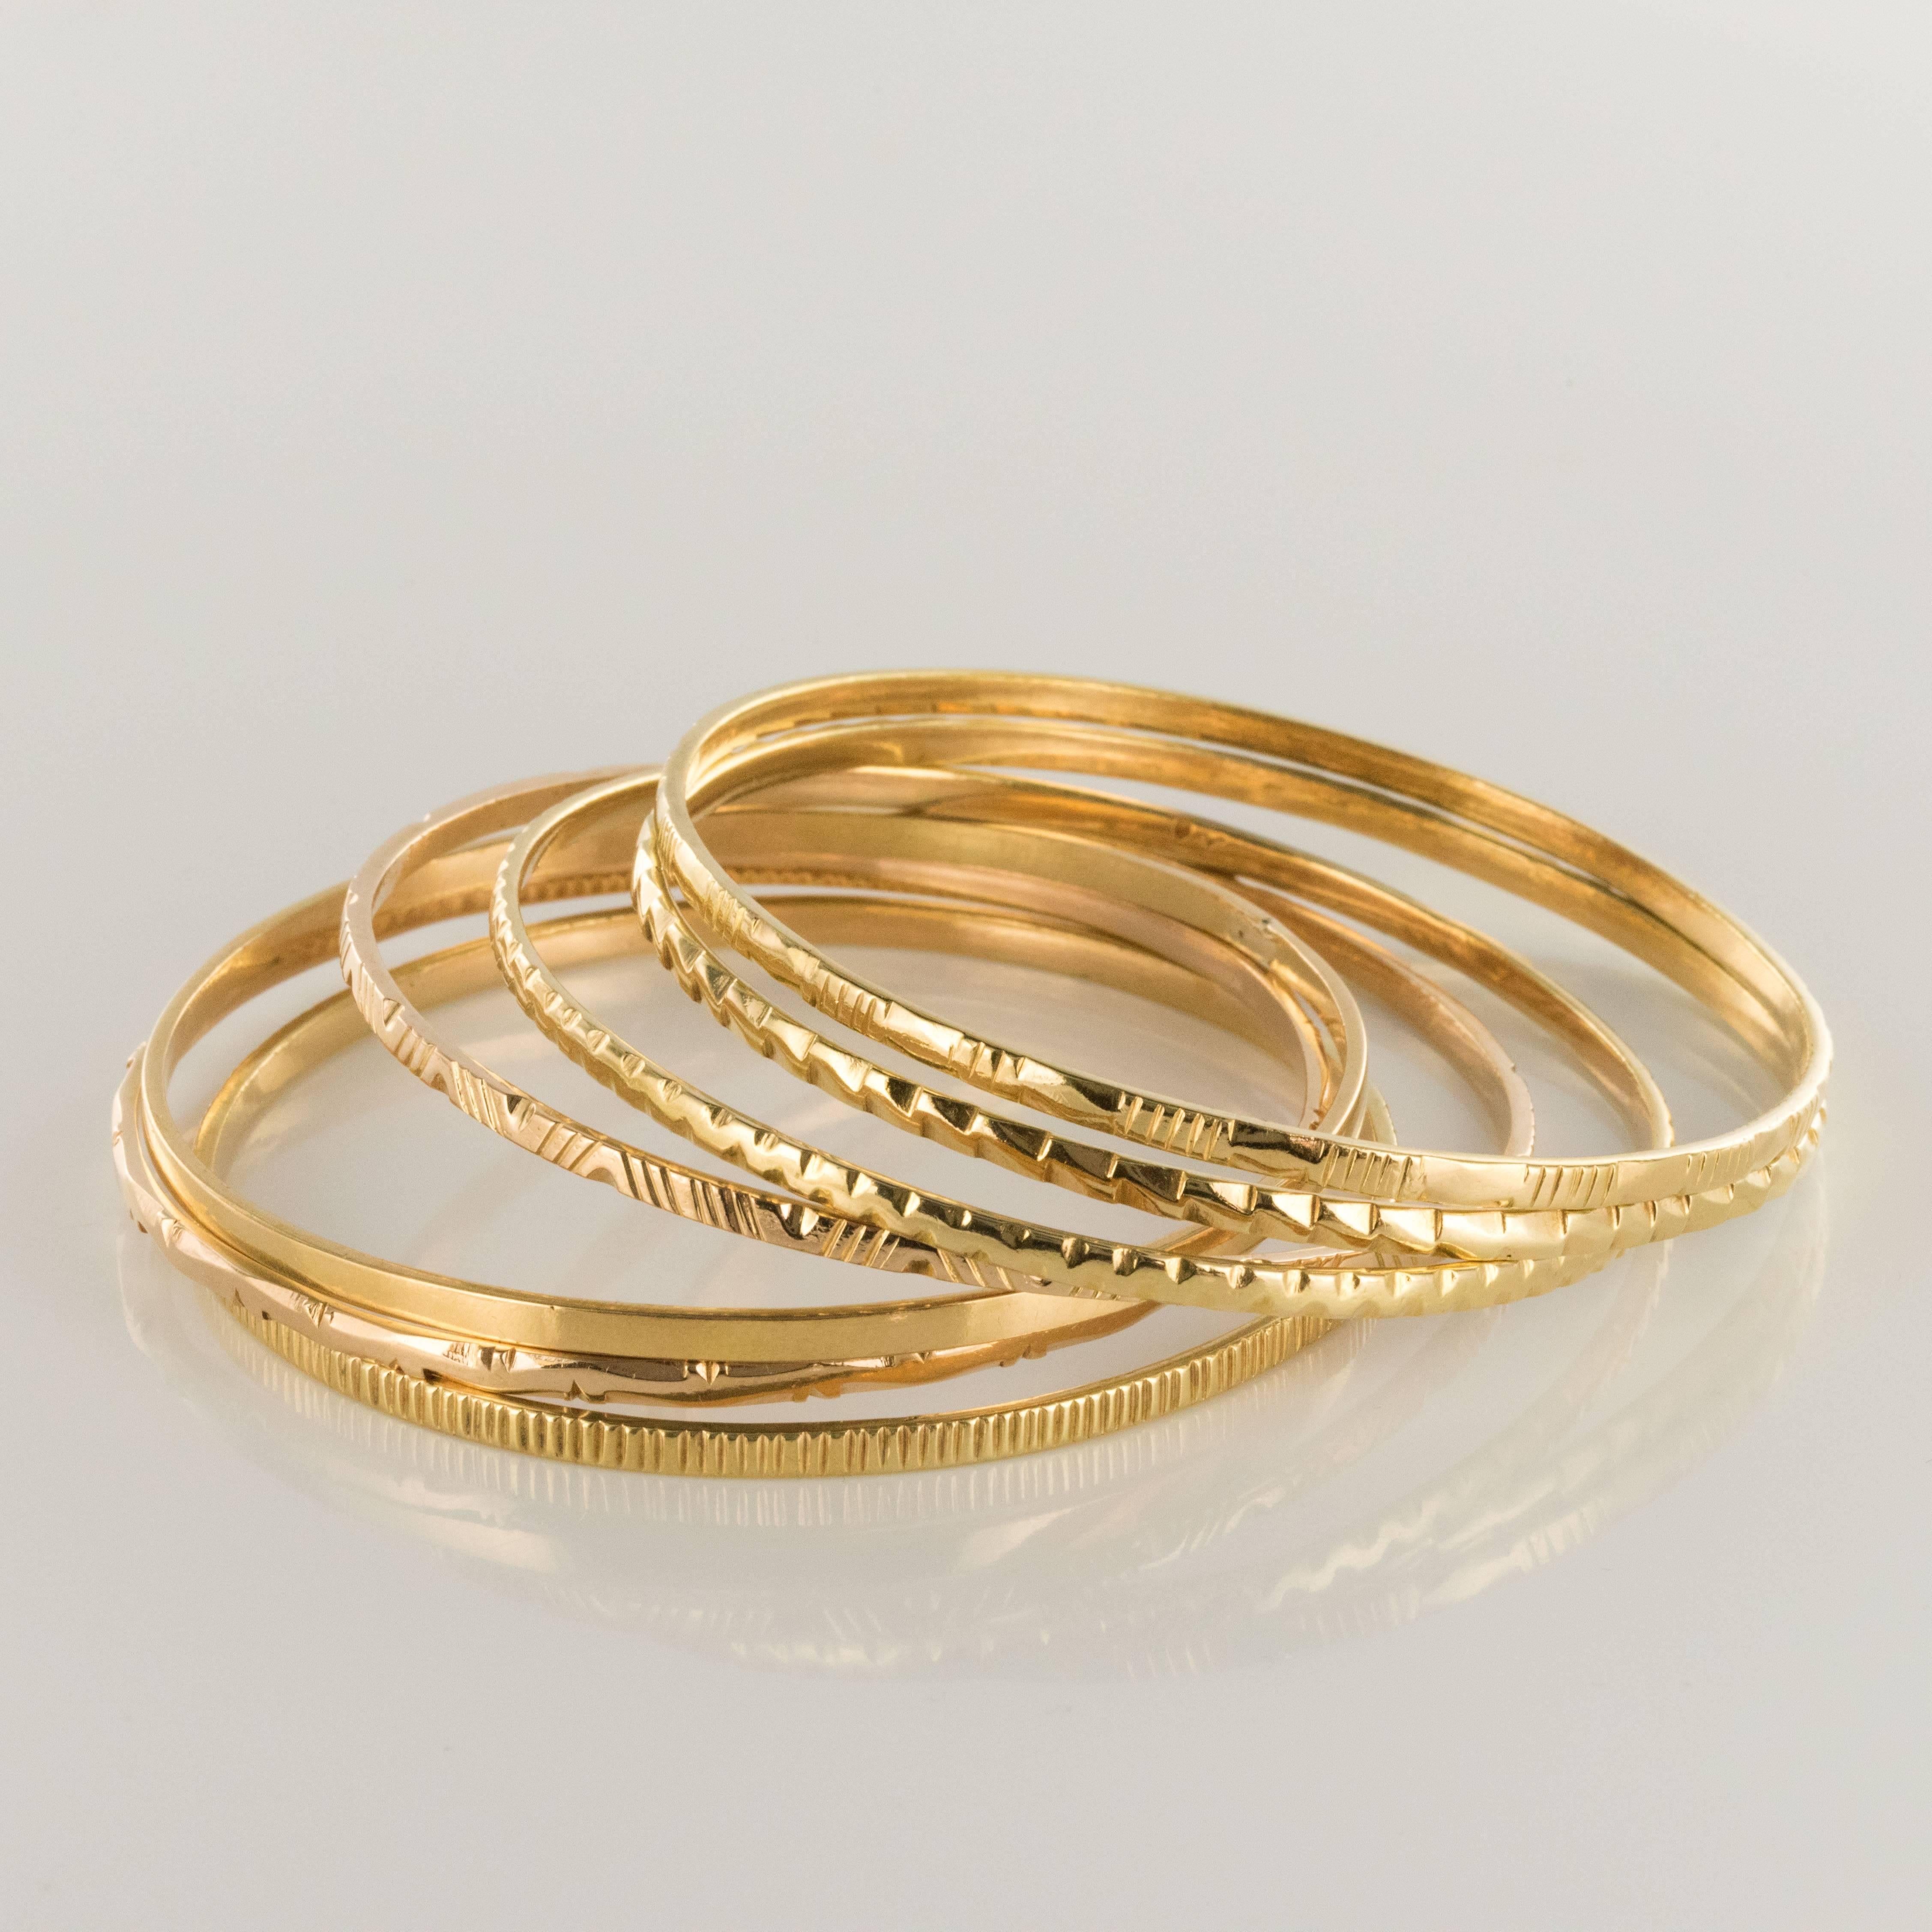 7 day bangle bracelets 18k gold